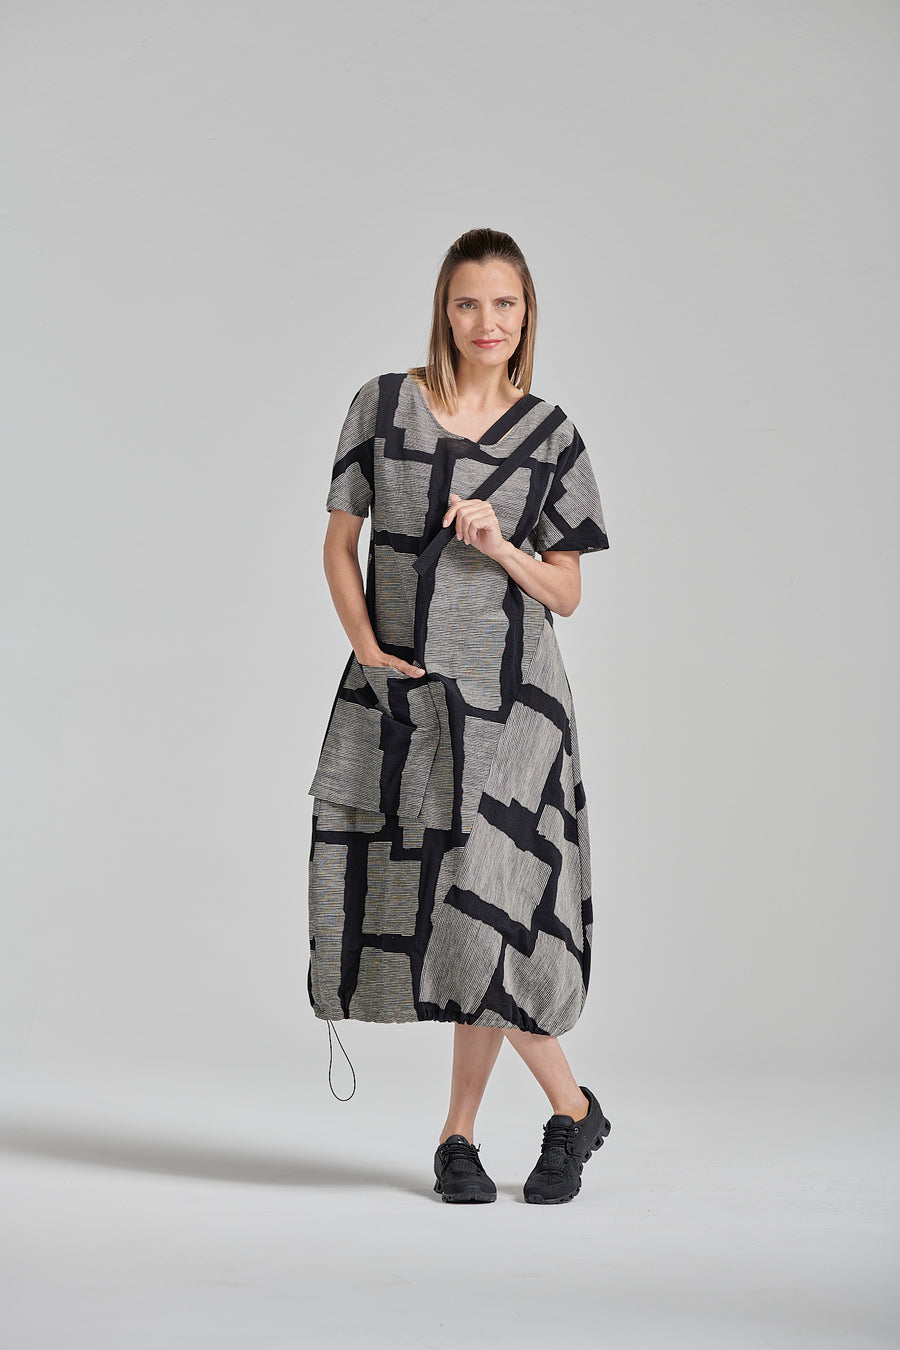 Printed linen/cotton blend dress